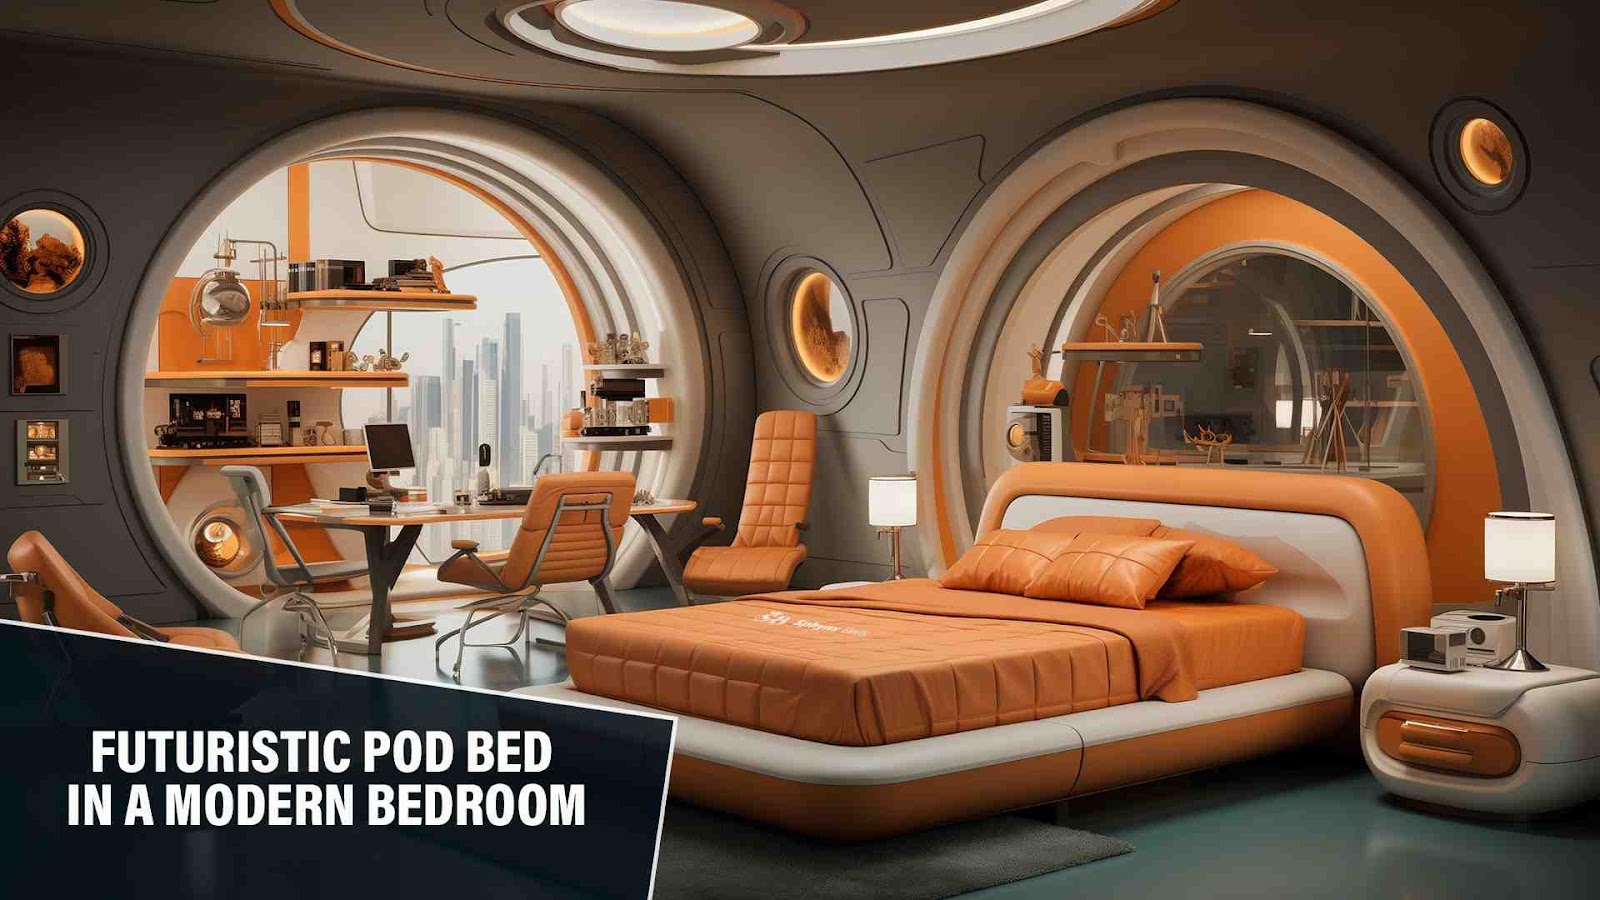 Futuristic Pod, Dubai, UAE: